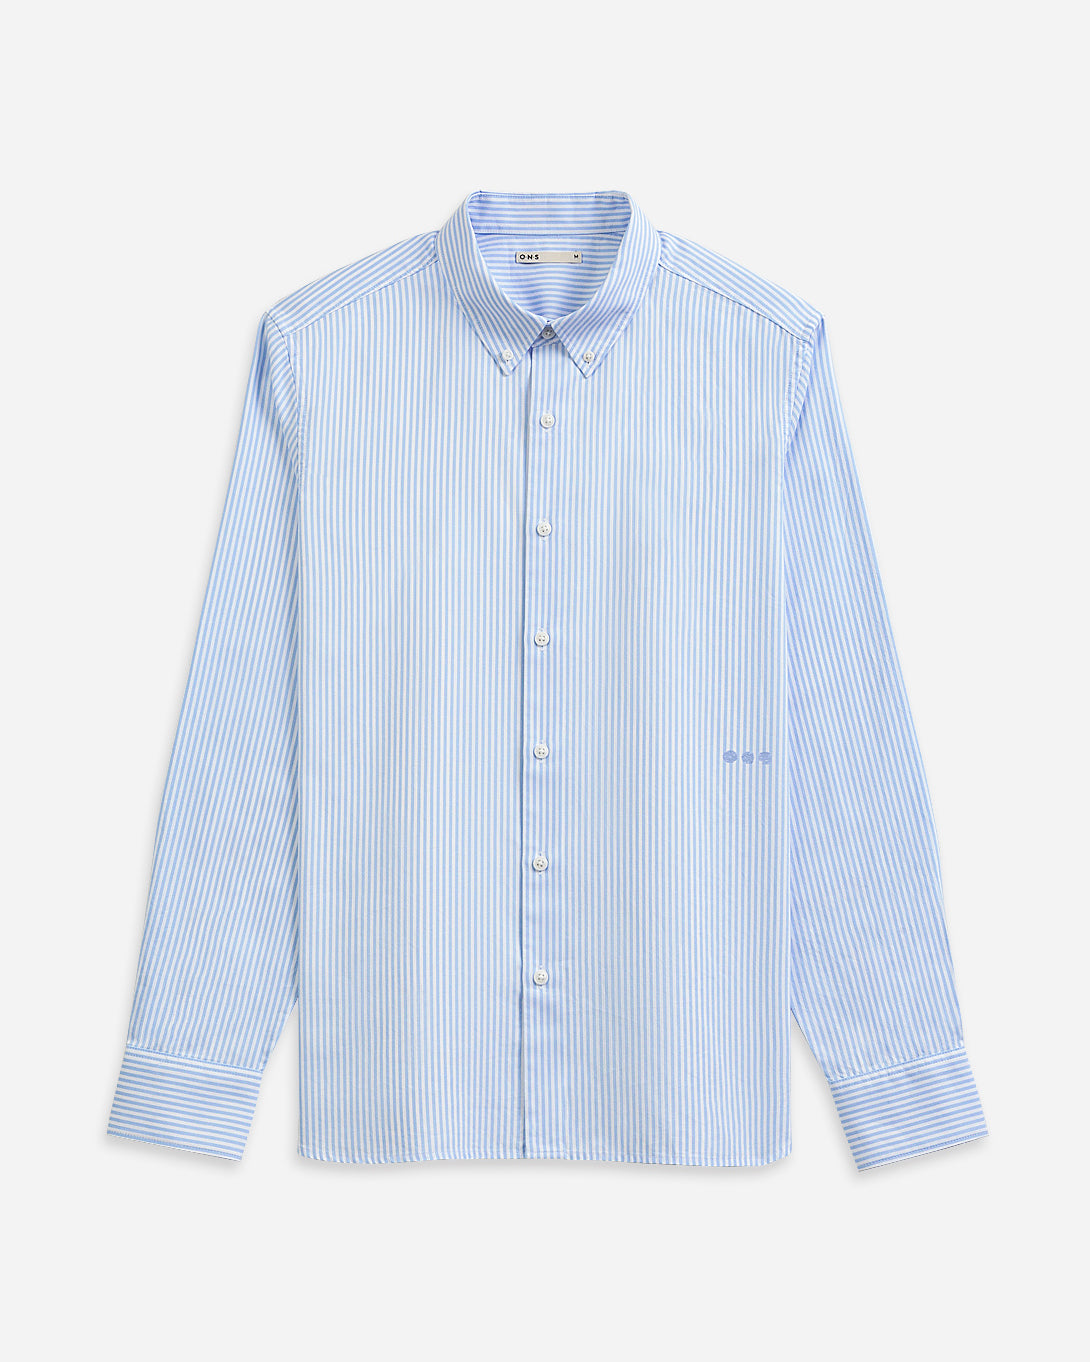 SKY BLUE/WHITE STRIPE Fulton Stripe Shirt Mens Button Down Logo